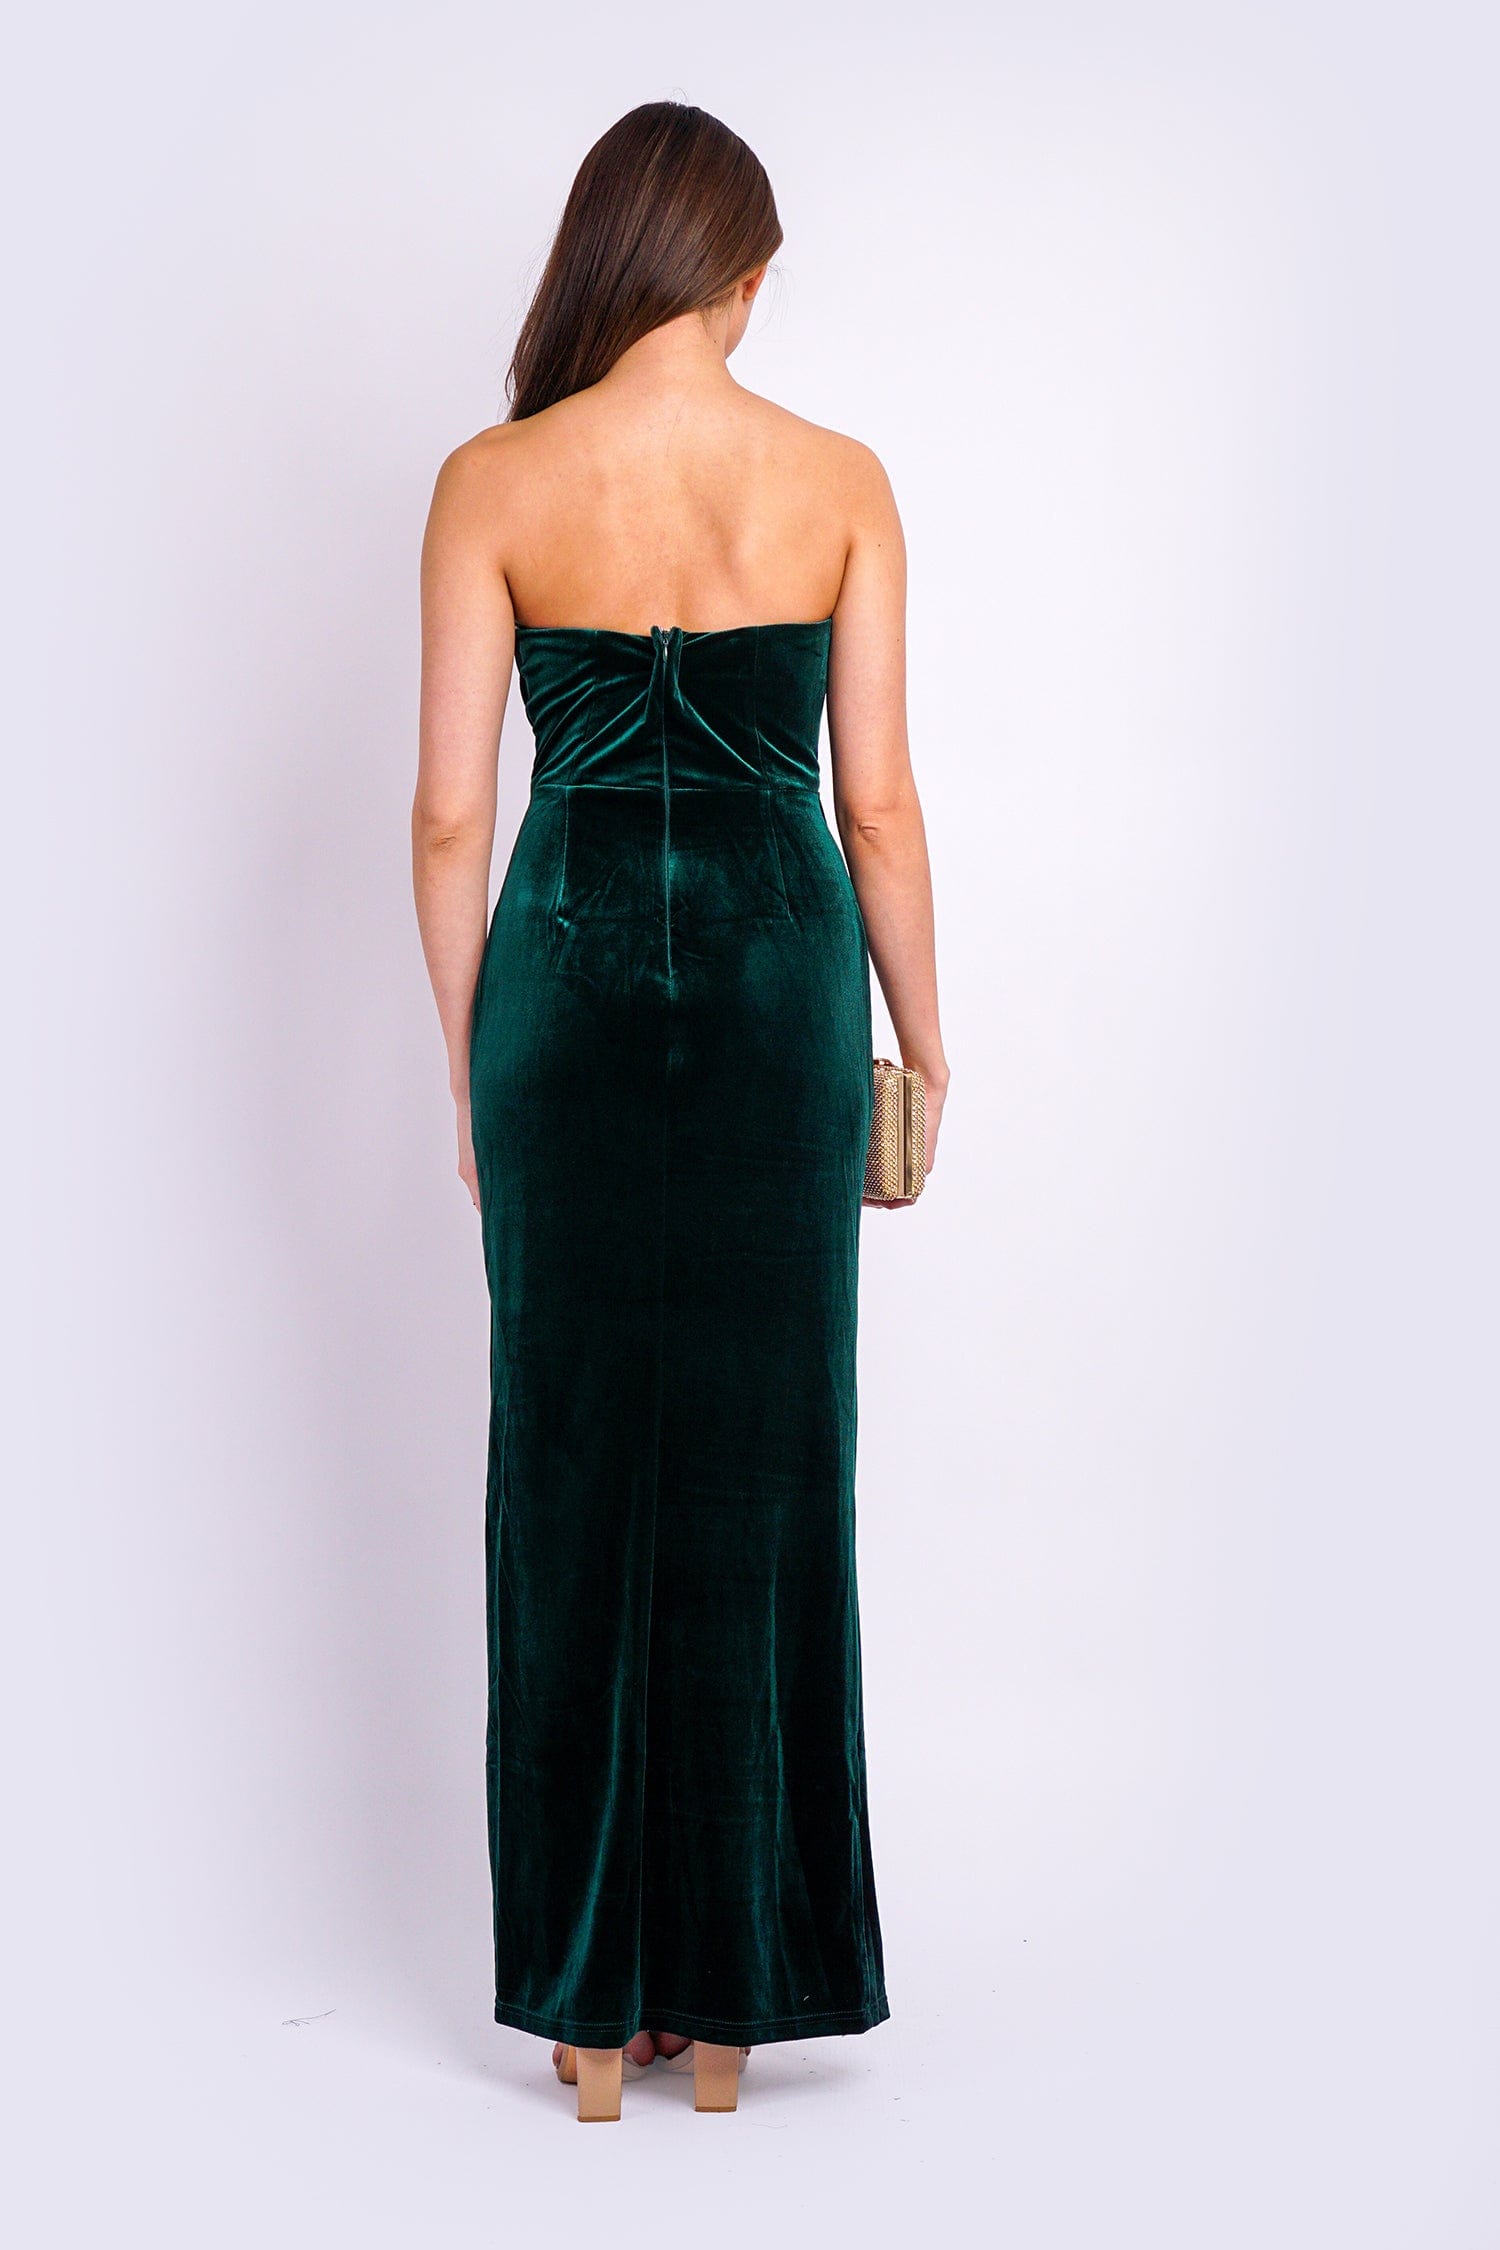 DCD GOWNS Emerald Strapless Sweetheart Velvet Gown